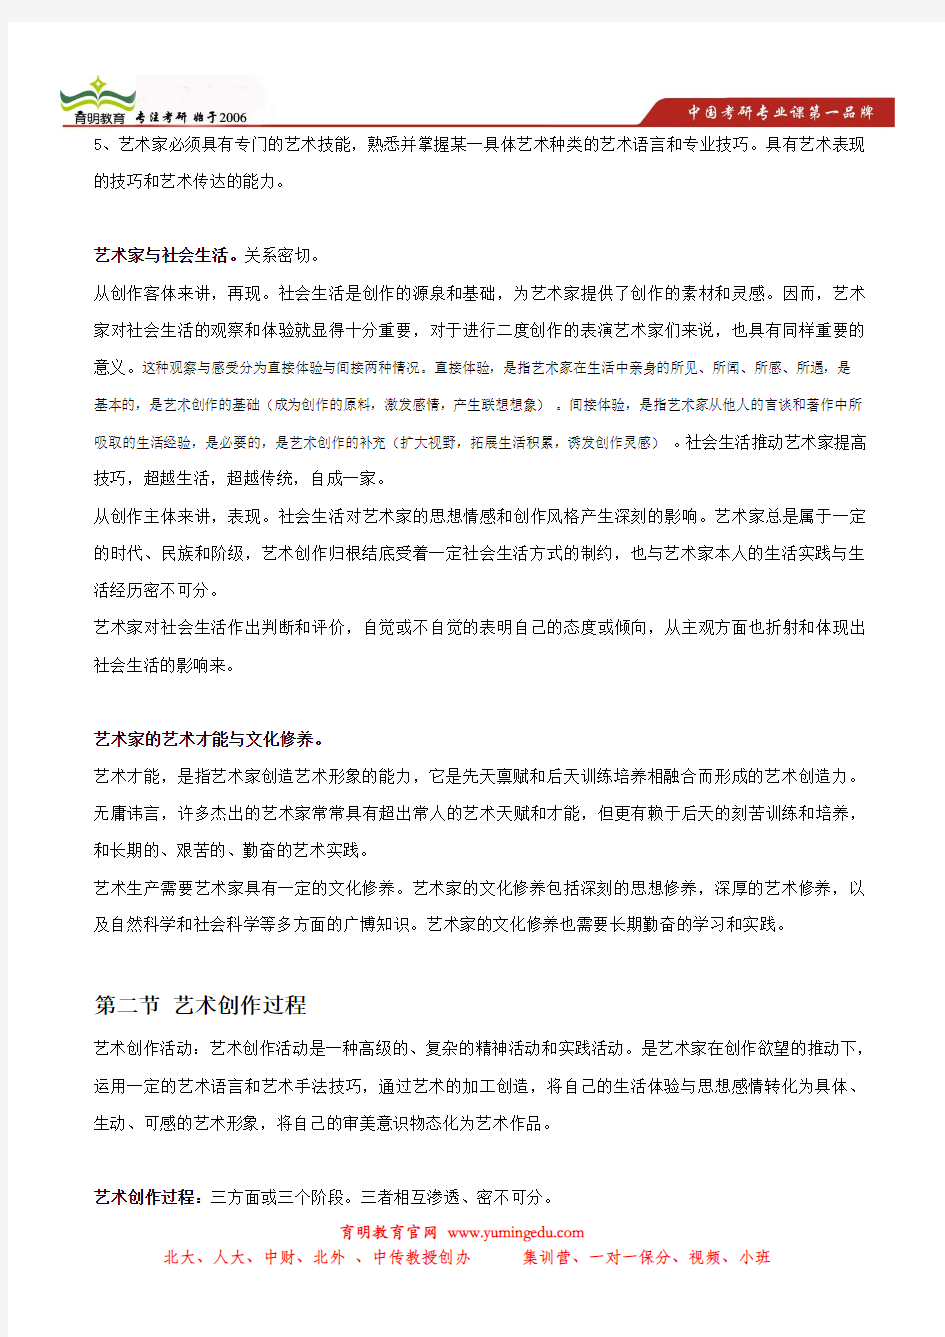 2014年中国人民大学艺术硕士考研笔记,状元笔记,考研真题,题库